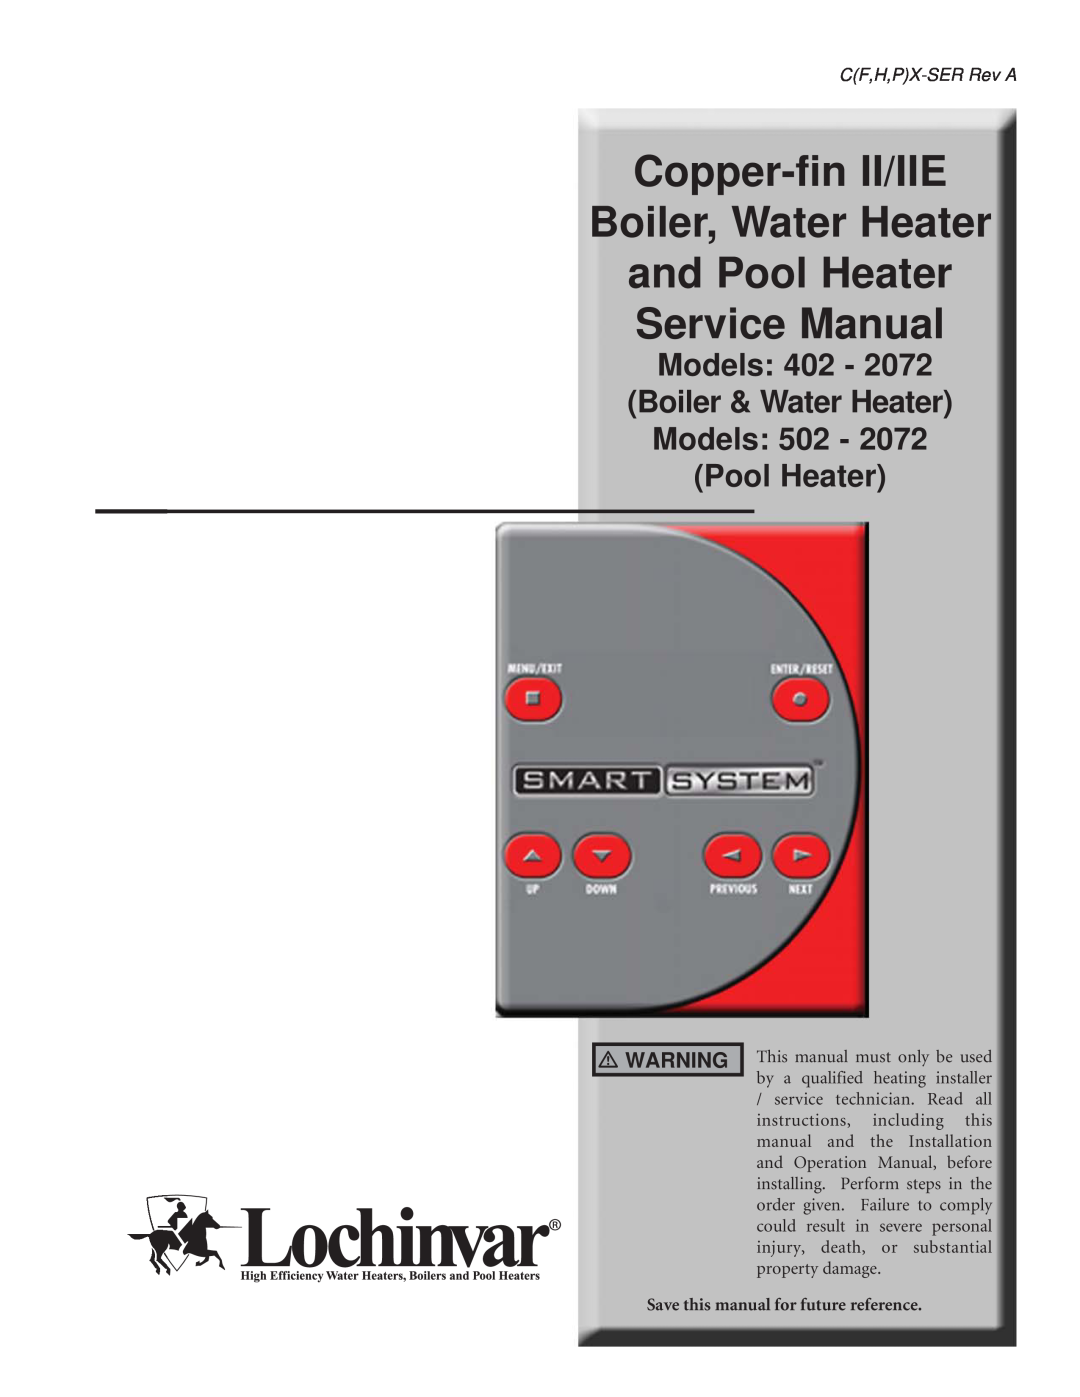 Lochinvar 502 - 2072 service manual Copper-finII/IIE Boiler, Water Heater, Models 402 - Boiler & Water Heater Models 